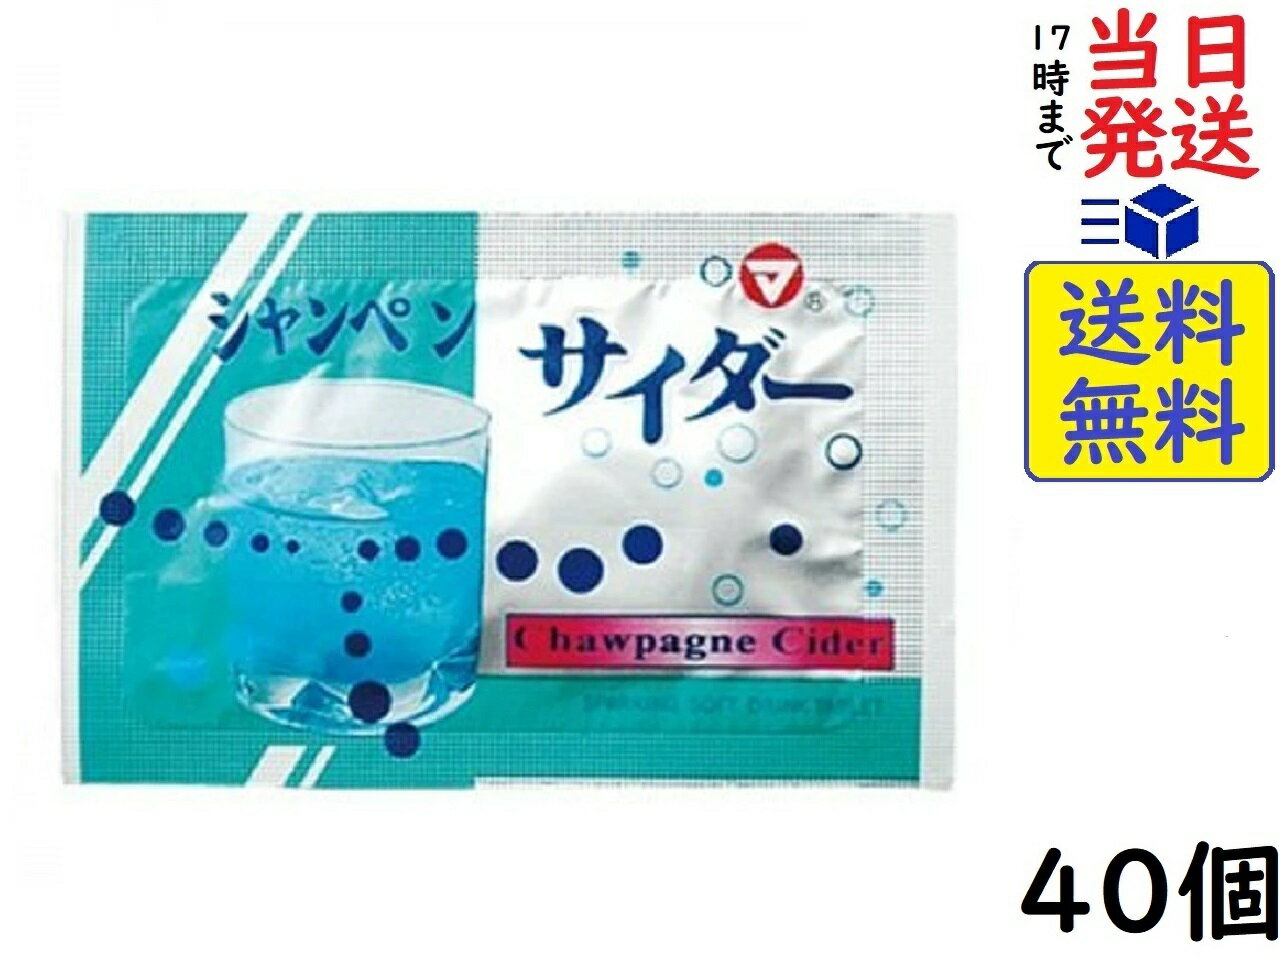 松山製菓 シャンペン サイダー (1箱は2粒入り...の商品画像